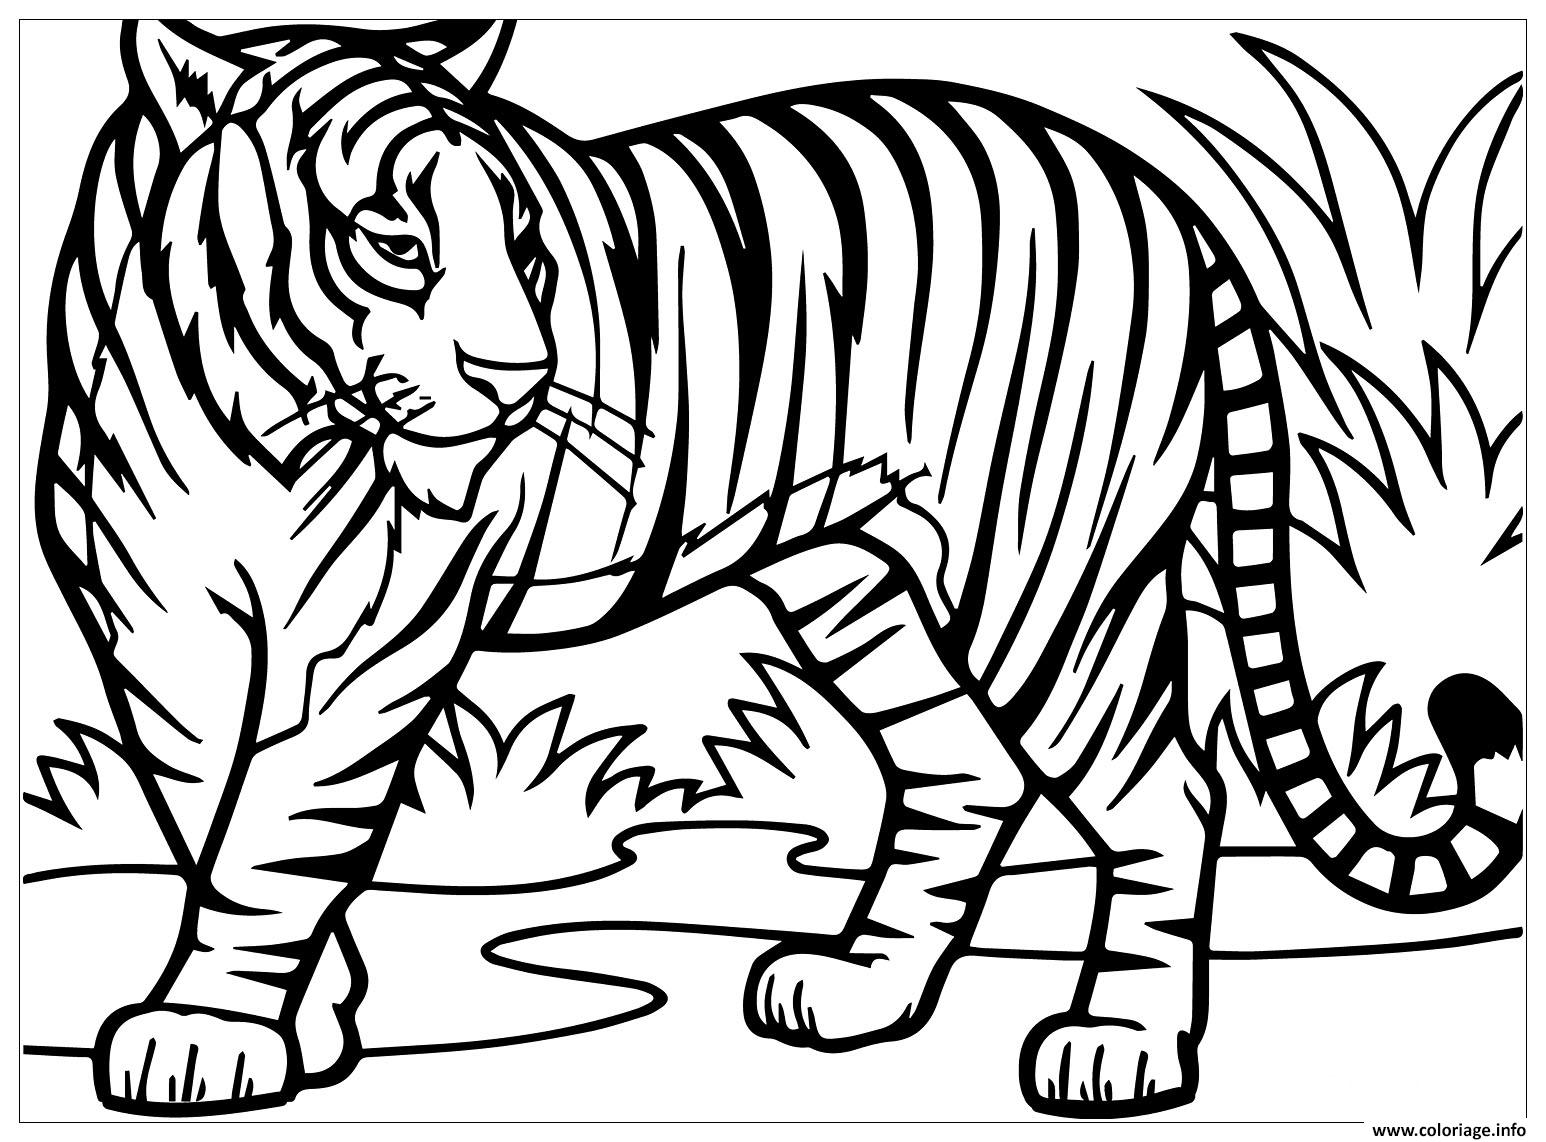 Dessin tigre felin vit dans la foret asie aux yeux bleus Coloriage Gratuit à Imprimer